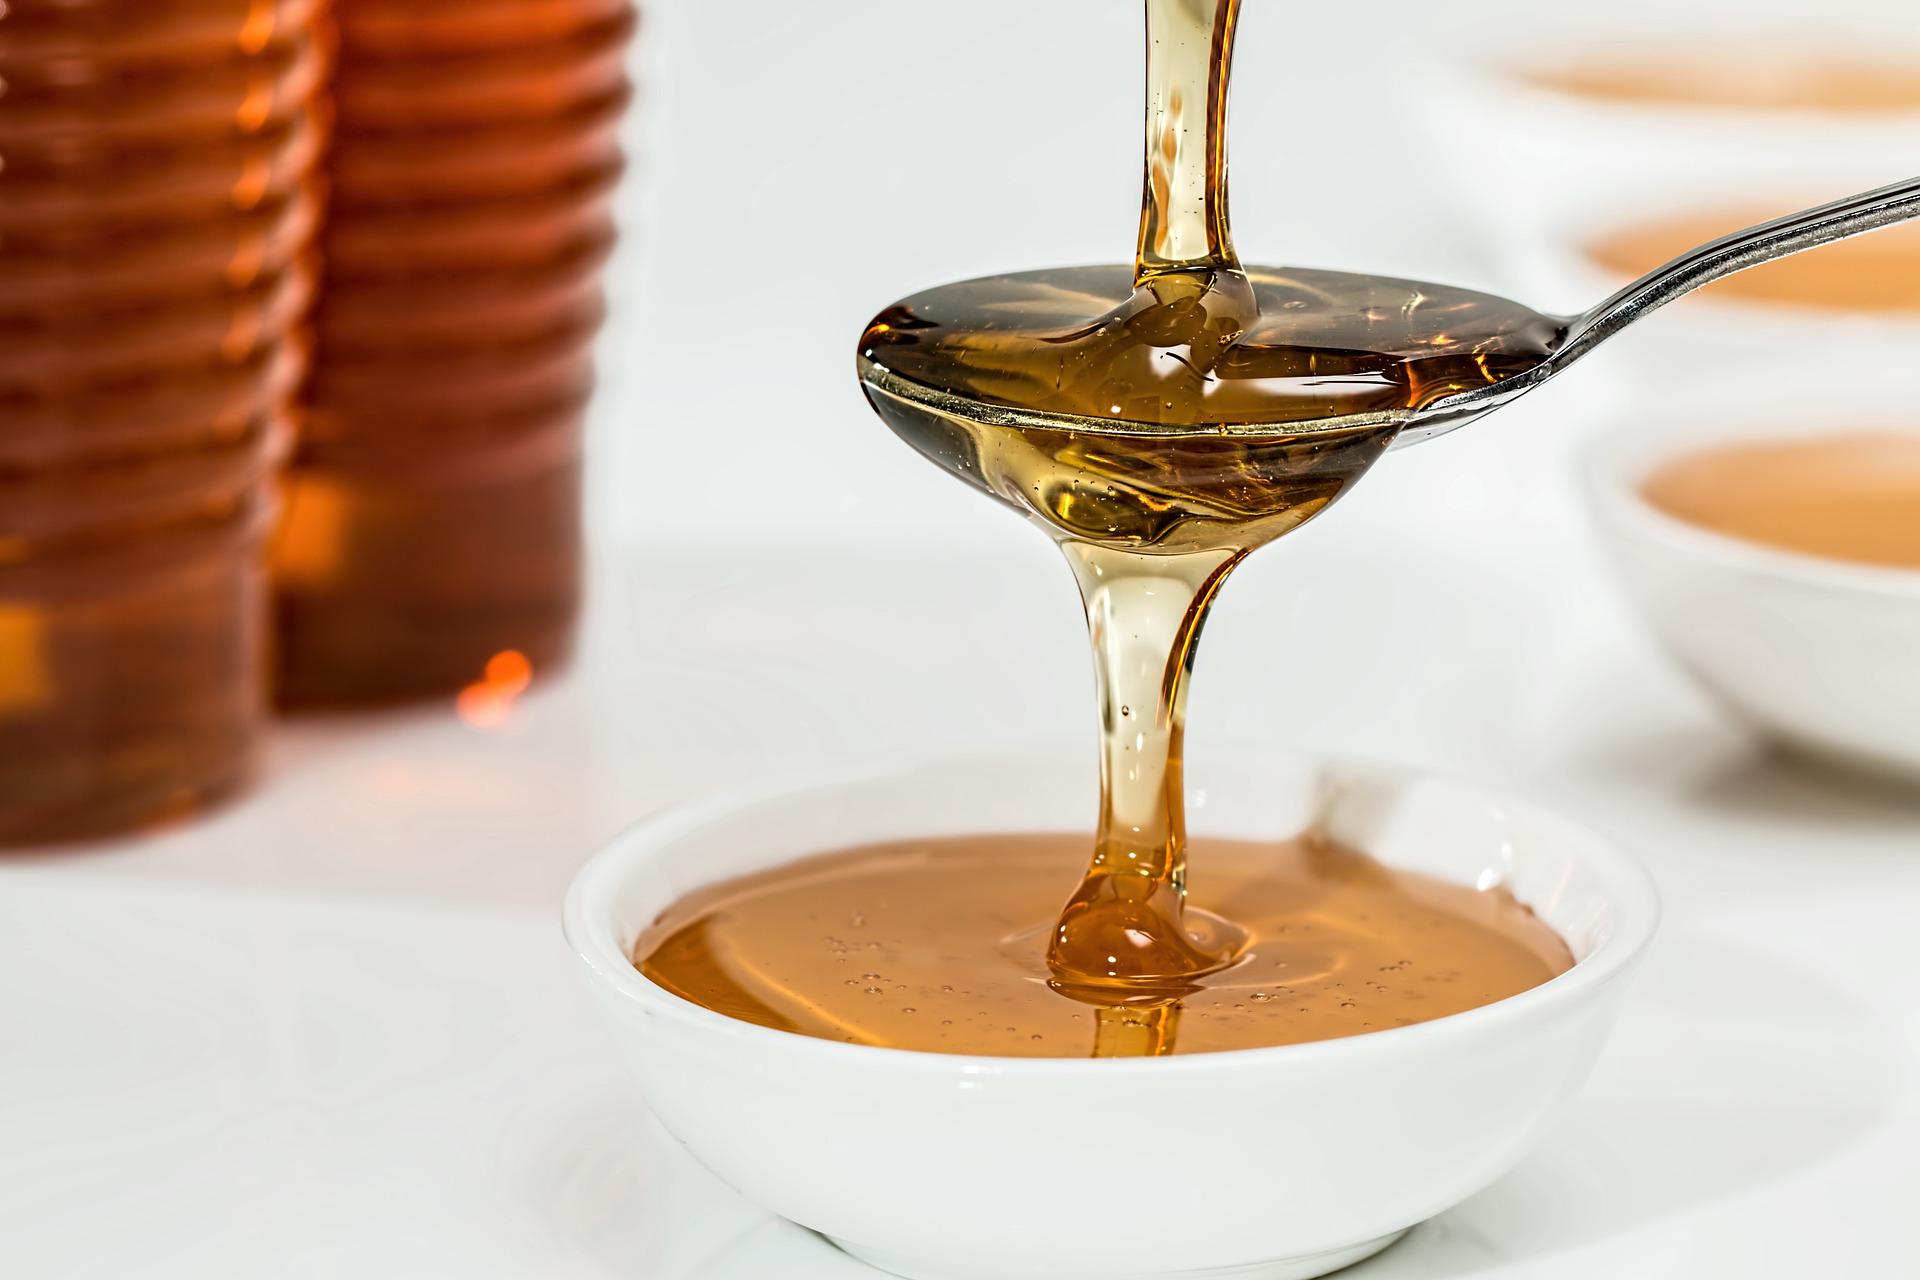 꿀을 뜰때 숟가락을 뜨거운물에 담갔다가 뜨면 깔끔하게 뜰수 있다.